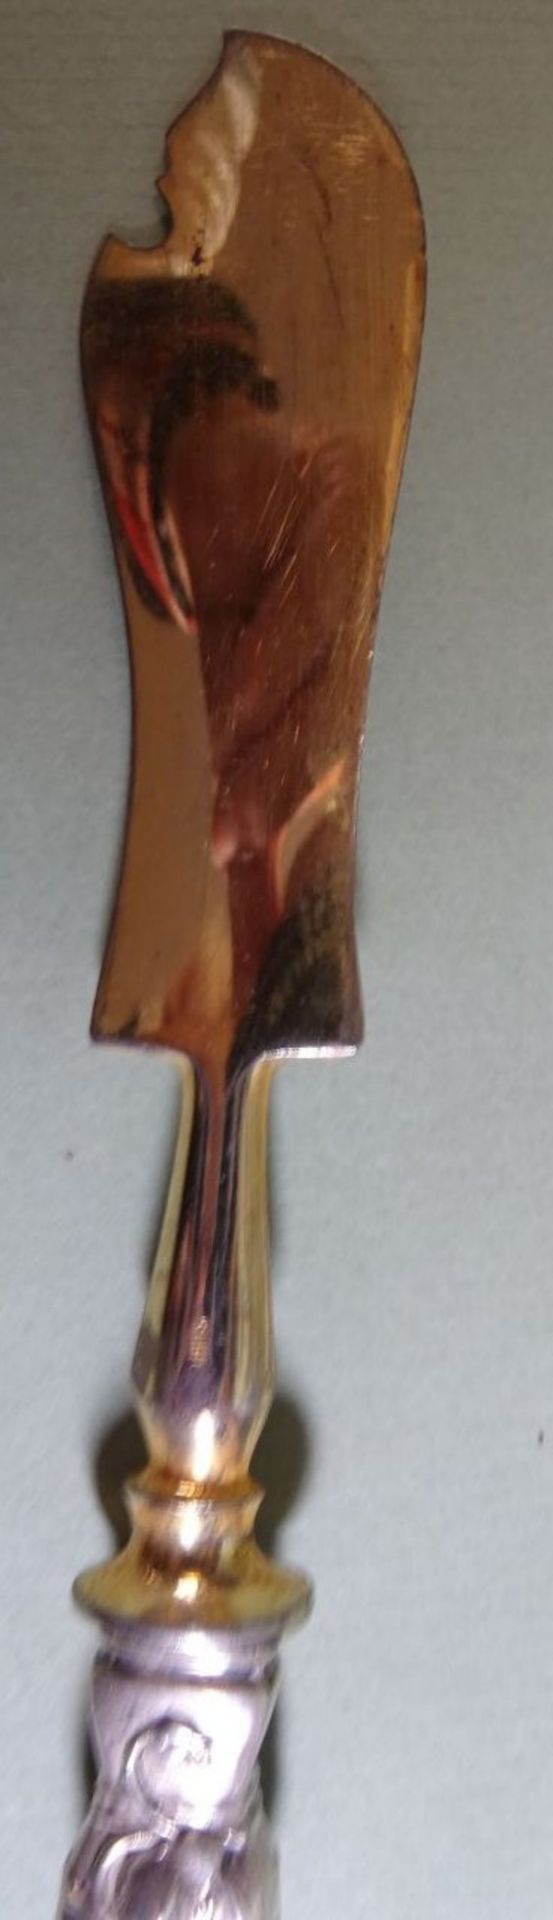 Buttermesser, S-800-, Klinge vergoldet, L-21 cm, 57 gr. - Bild 5 aus 5